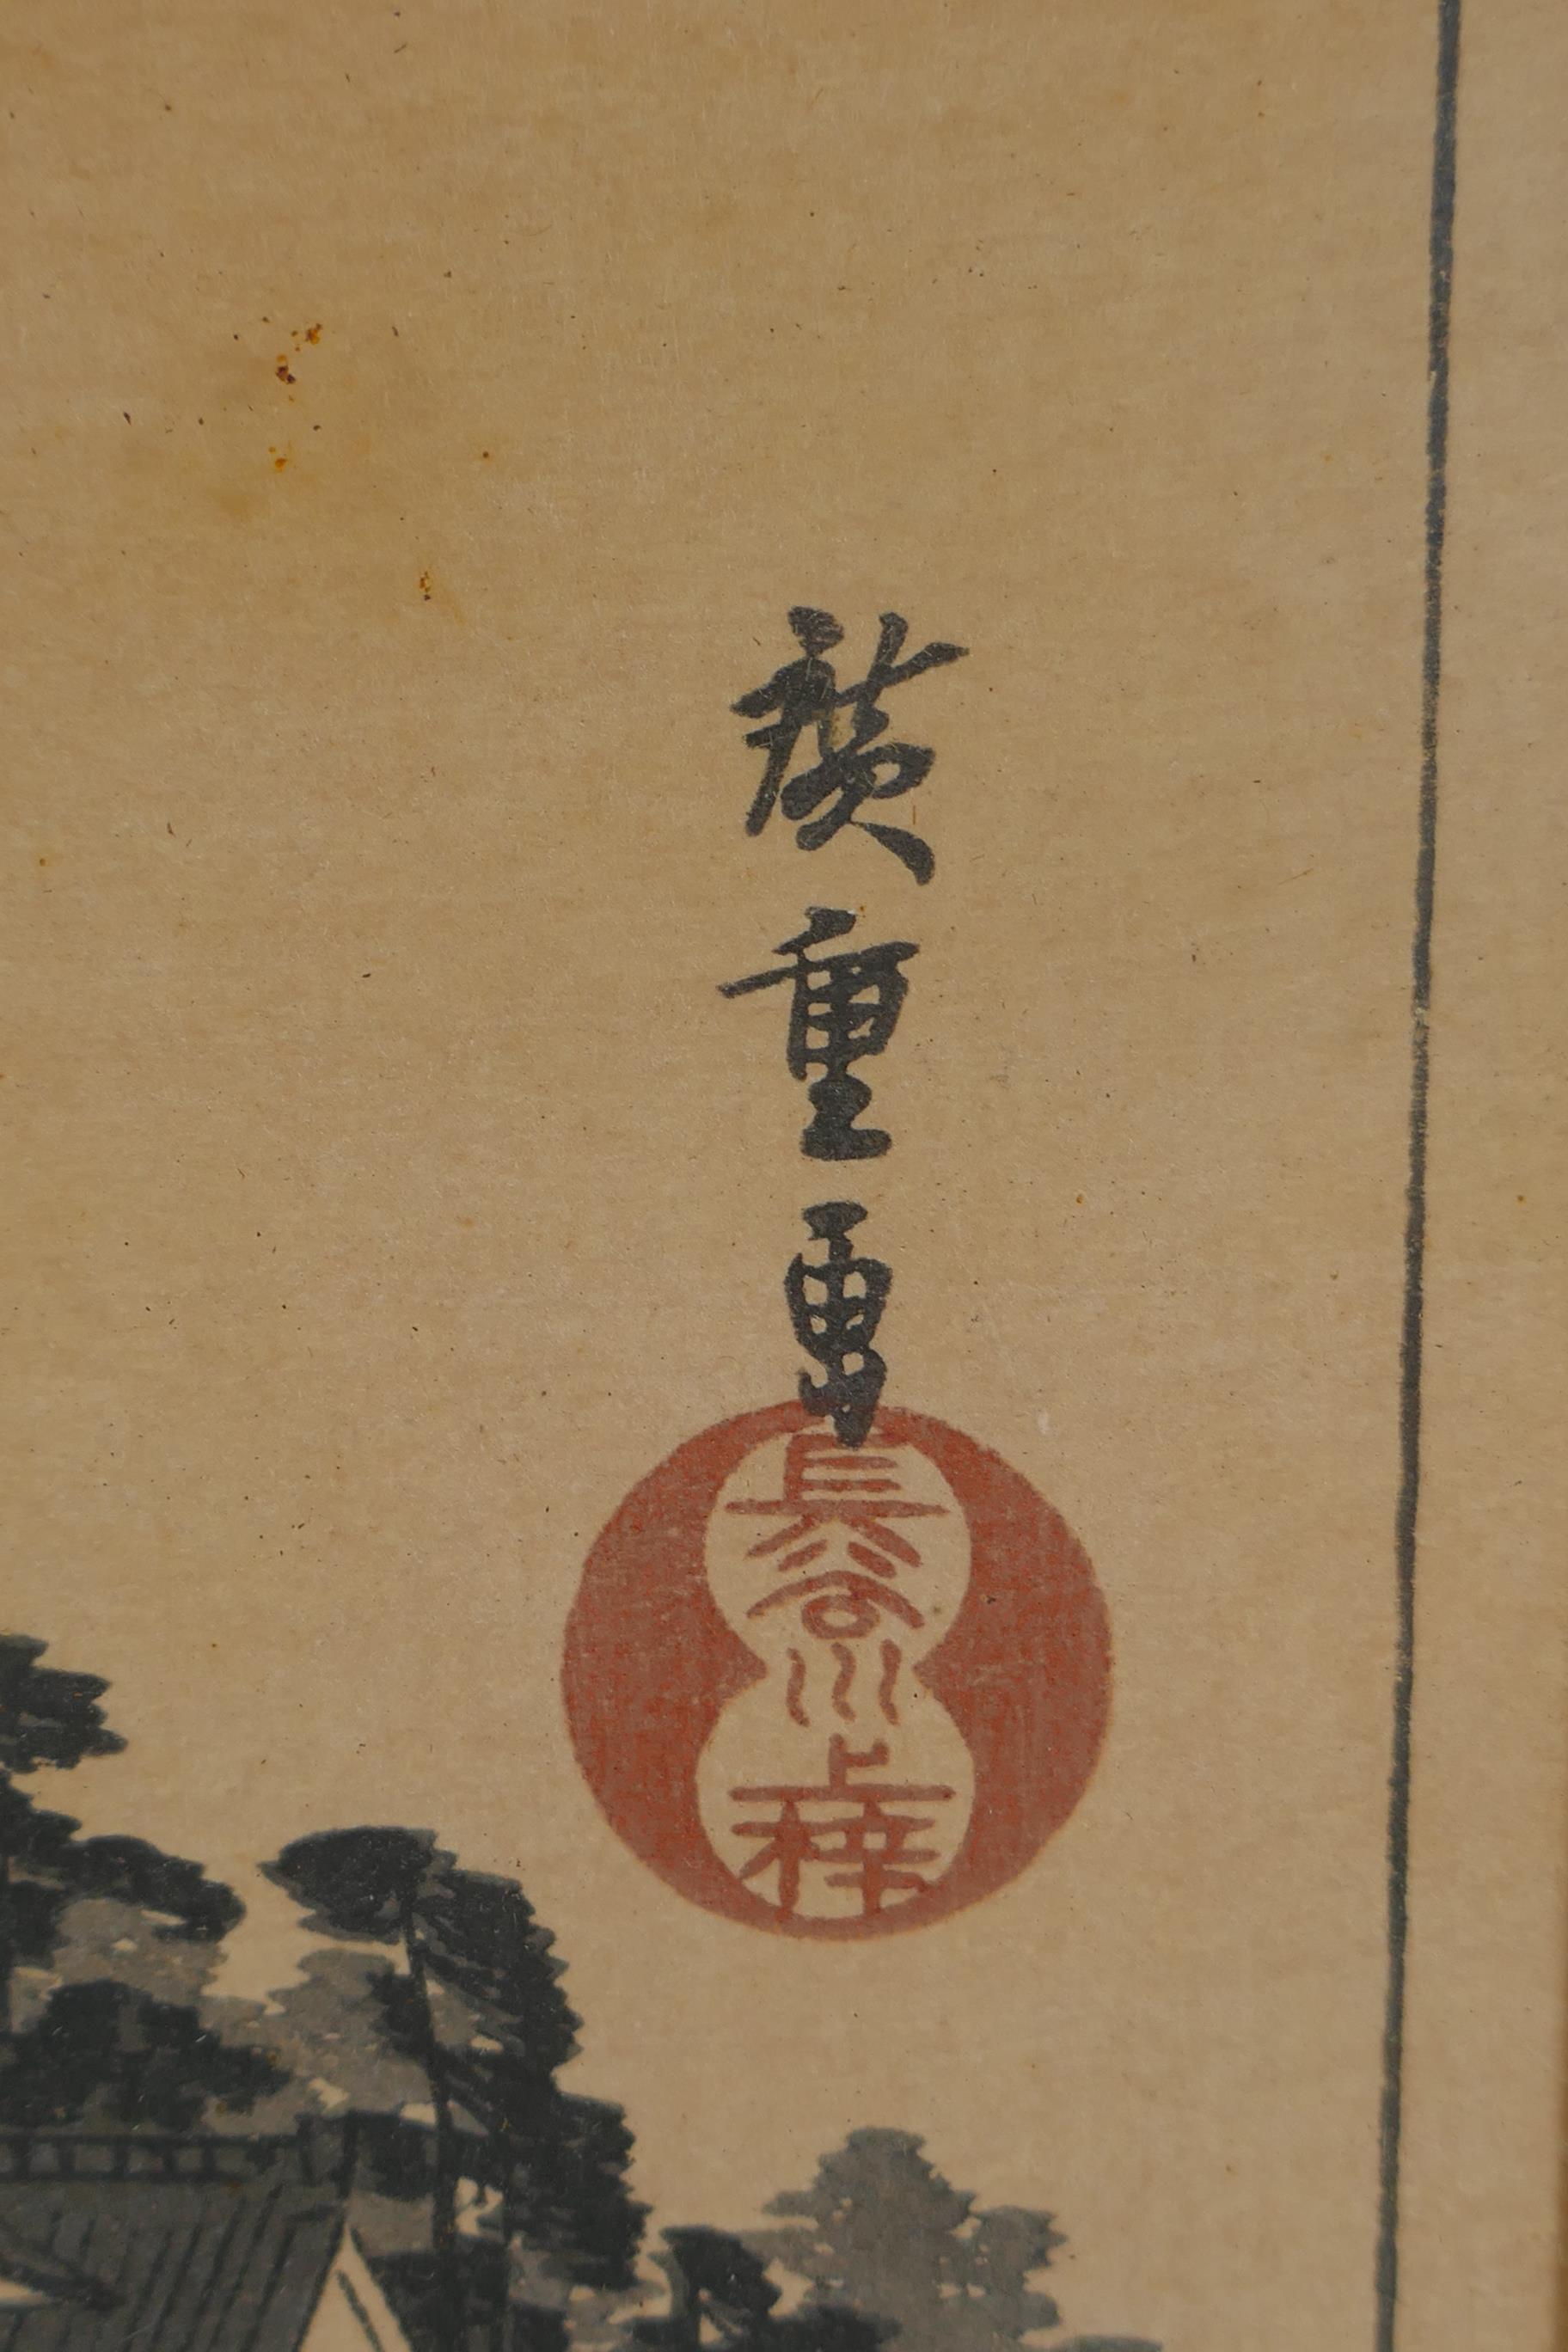 Utagawa Hiroshige, (Japanese, 1797-1858), Kuwana: Shichiri Crossing, from the series Fifty-three - Image 4 of 5